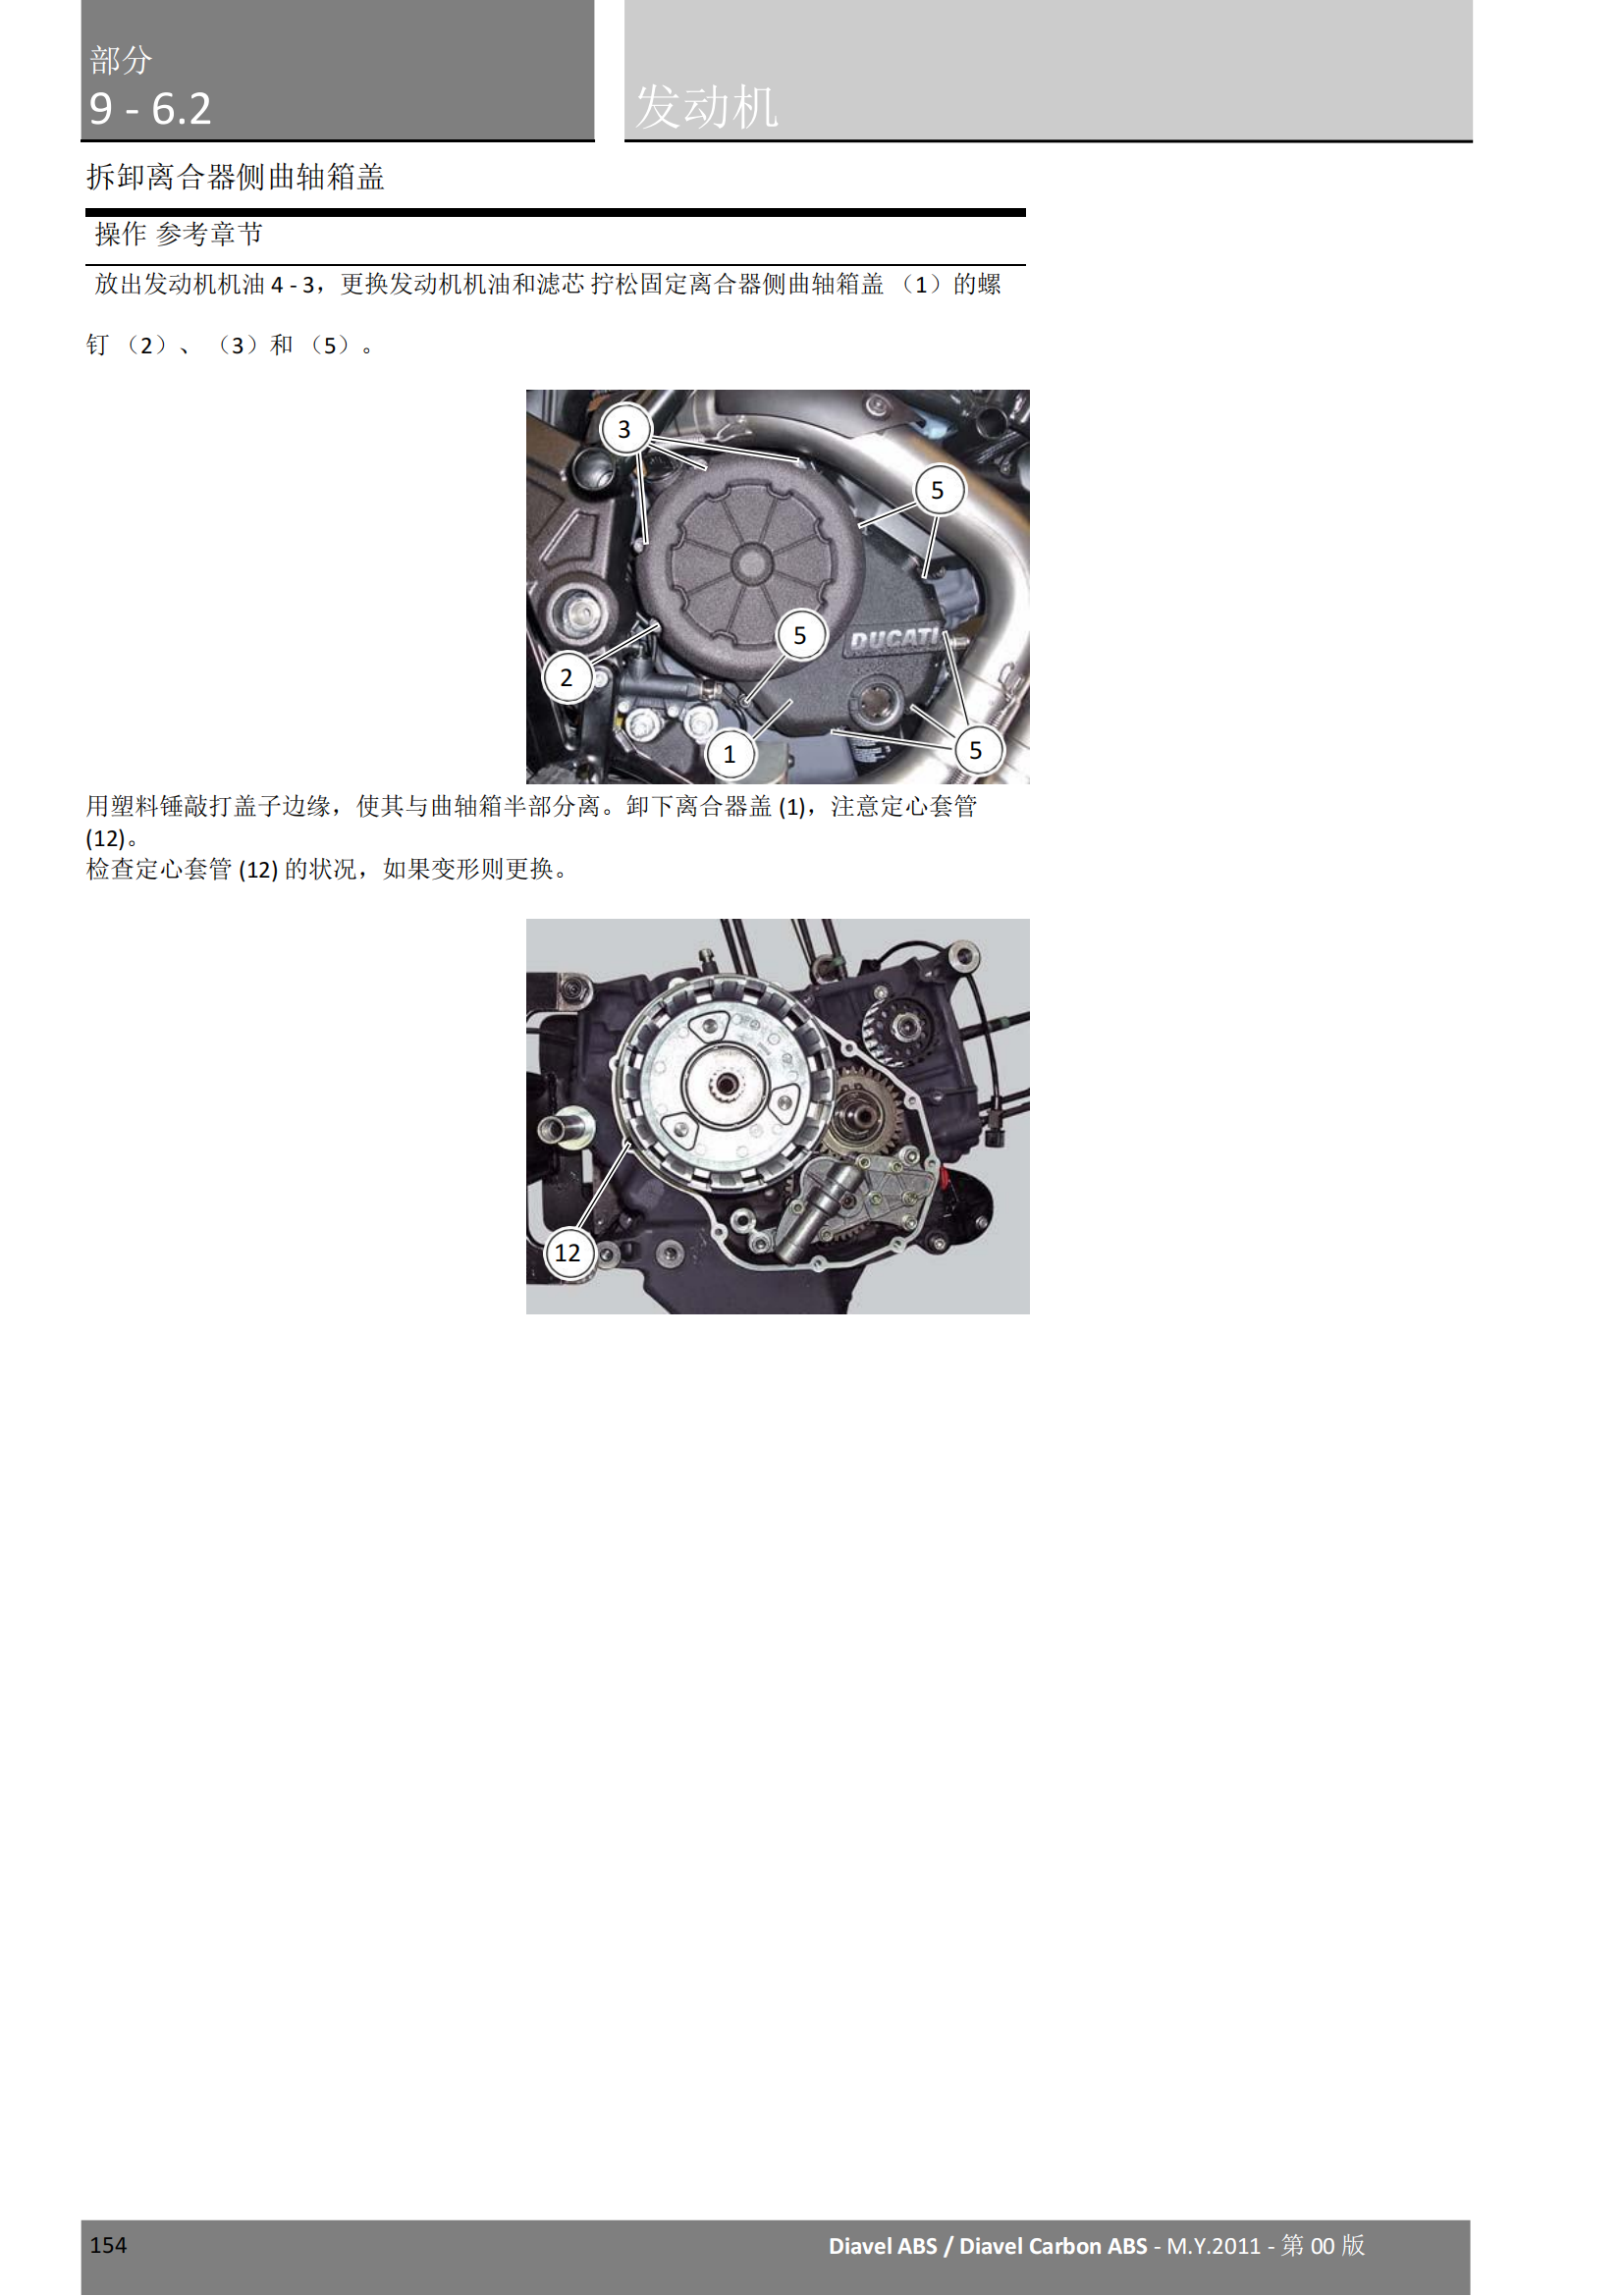 简体中文2011年杜卡迪大魔鬼 Ducati Diavel ABS维修手册插图4